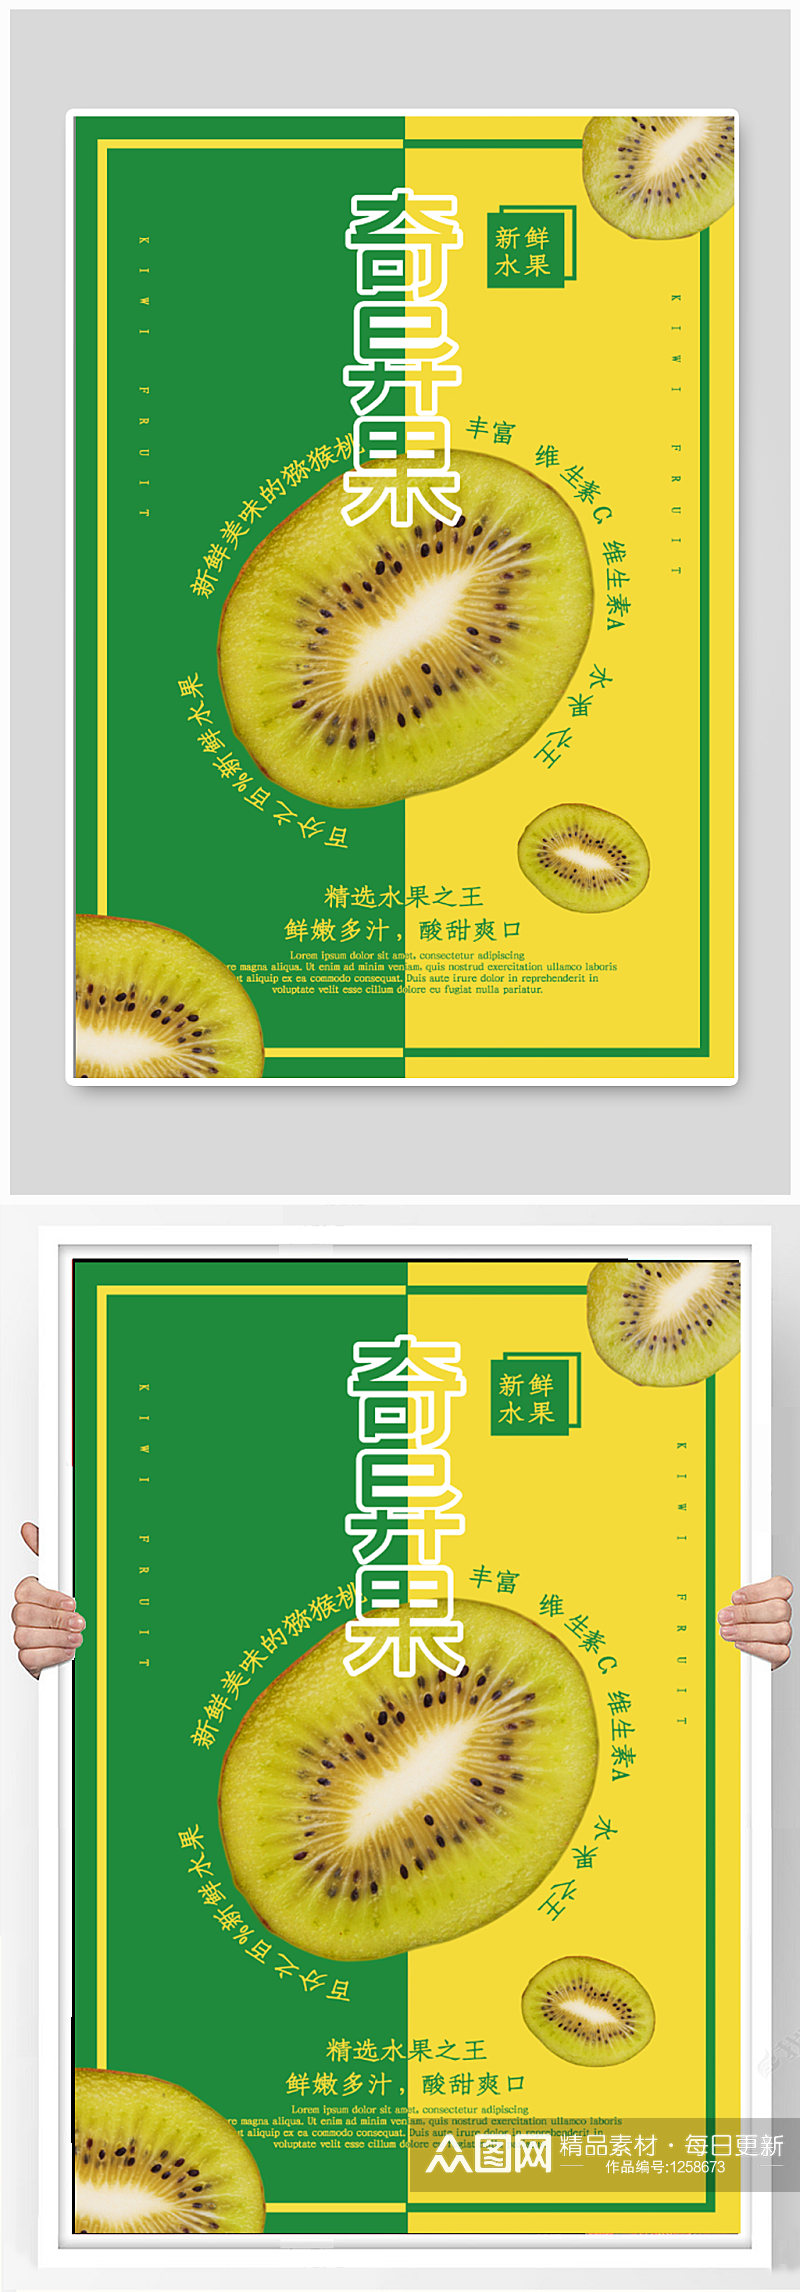 猕猴桃水果店促销宣传海报素材